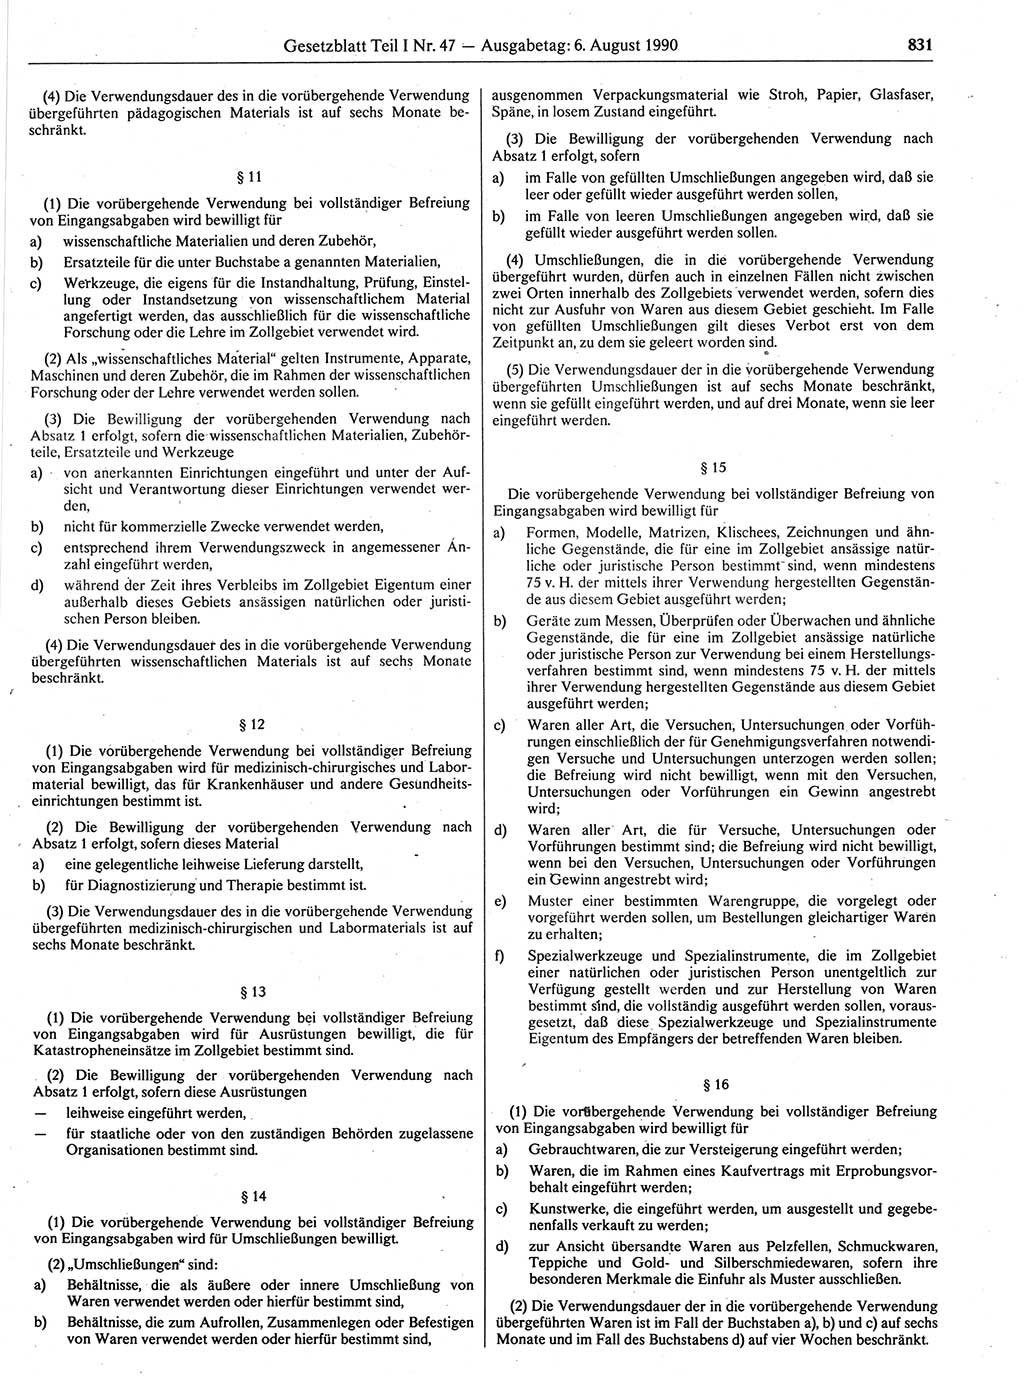 Gesetzblatt (GBl.) der Deutschen Demokratischen Republik (DDR) Teil Ⅰ 1990, Seite 831 (GBl. DDR Ⅰ 1990, S. 831)